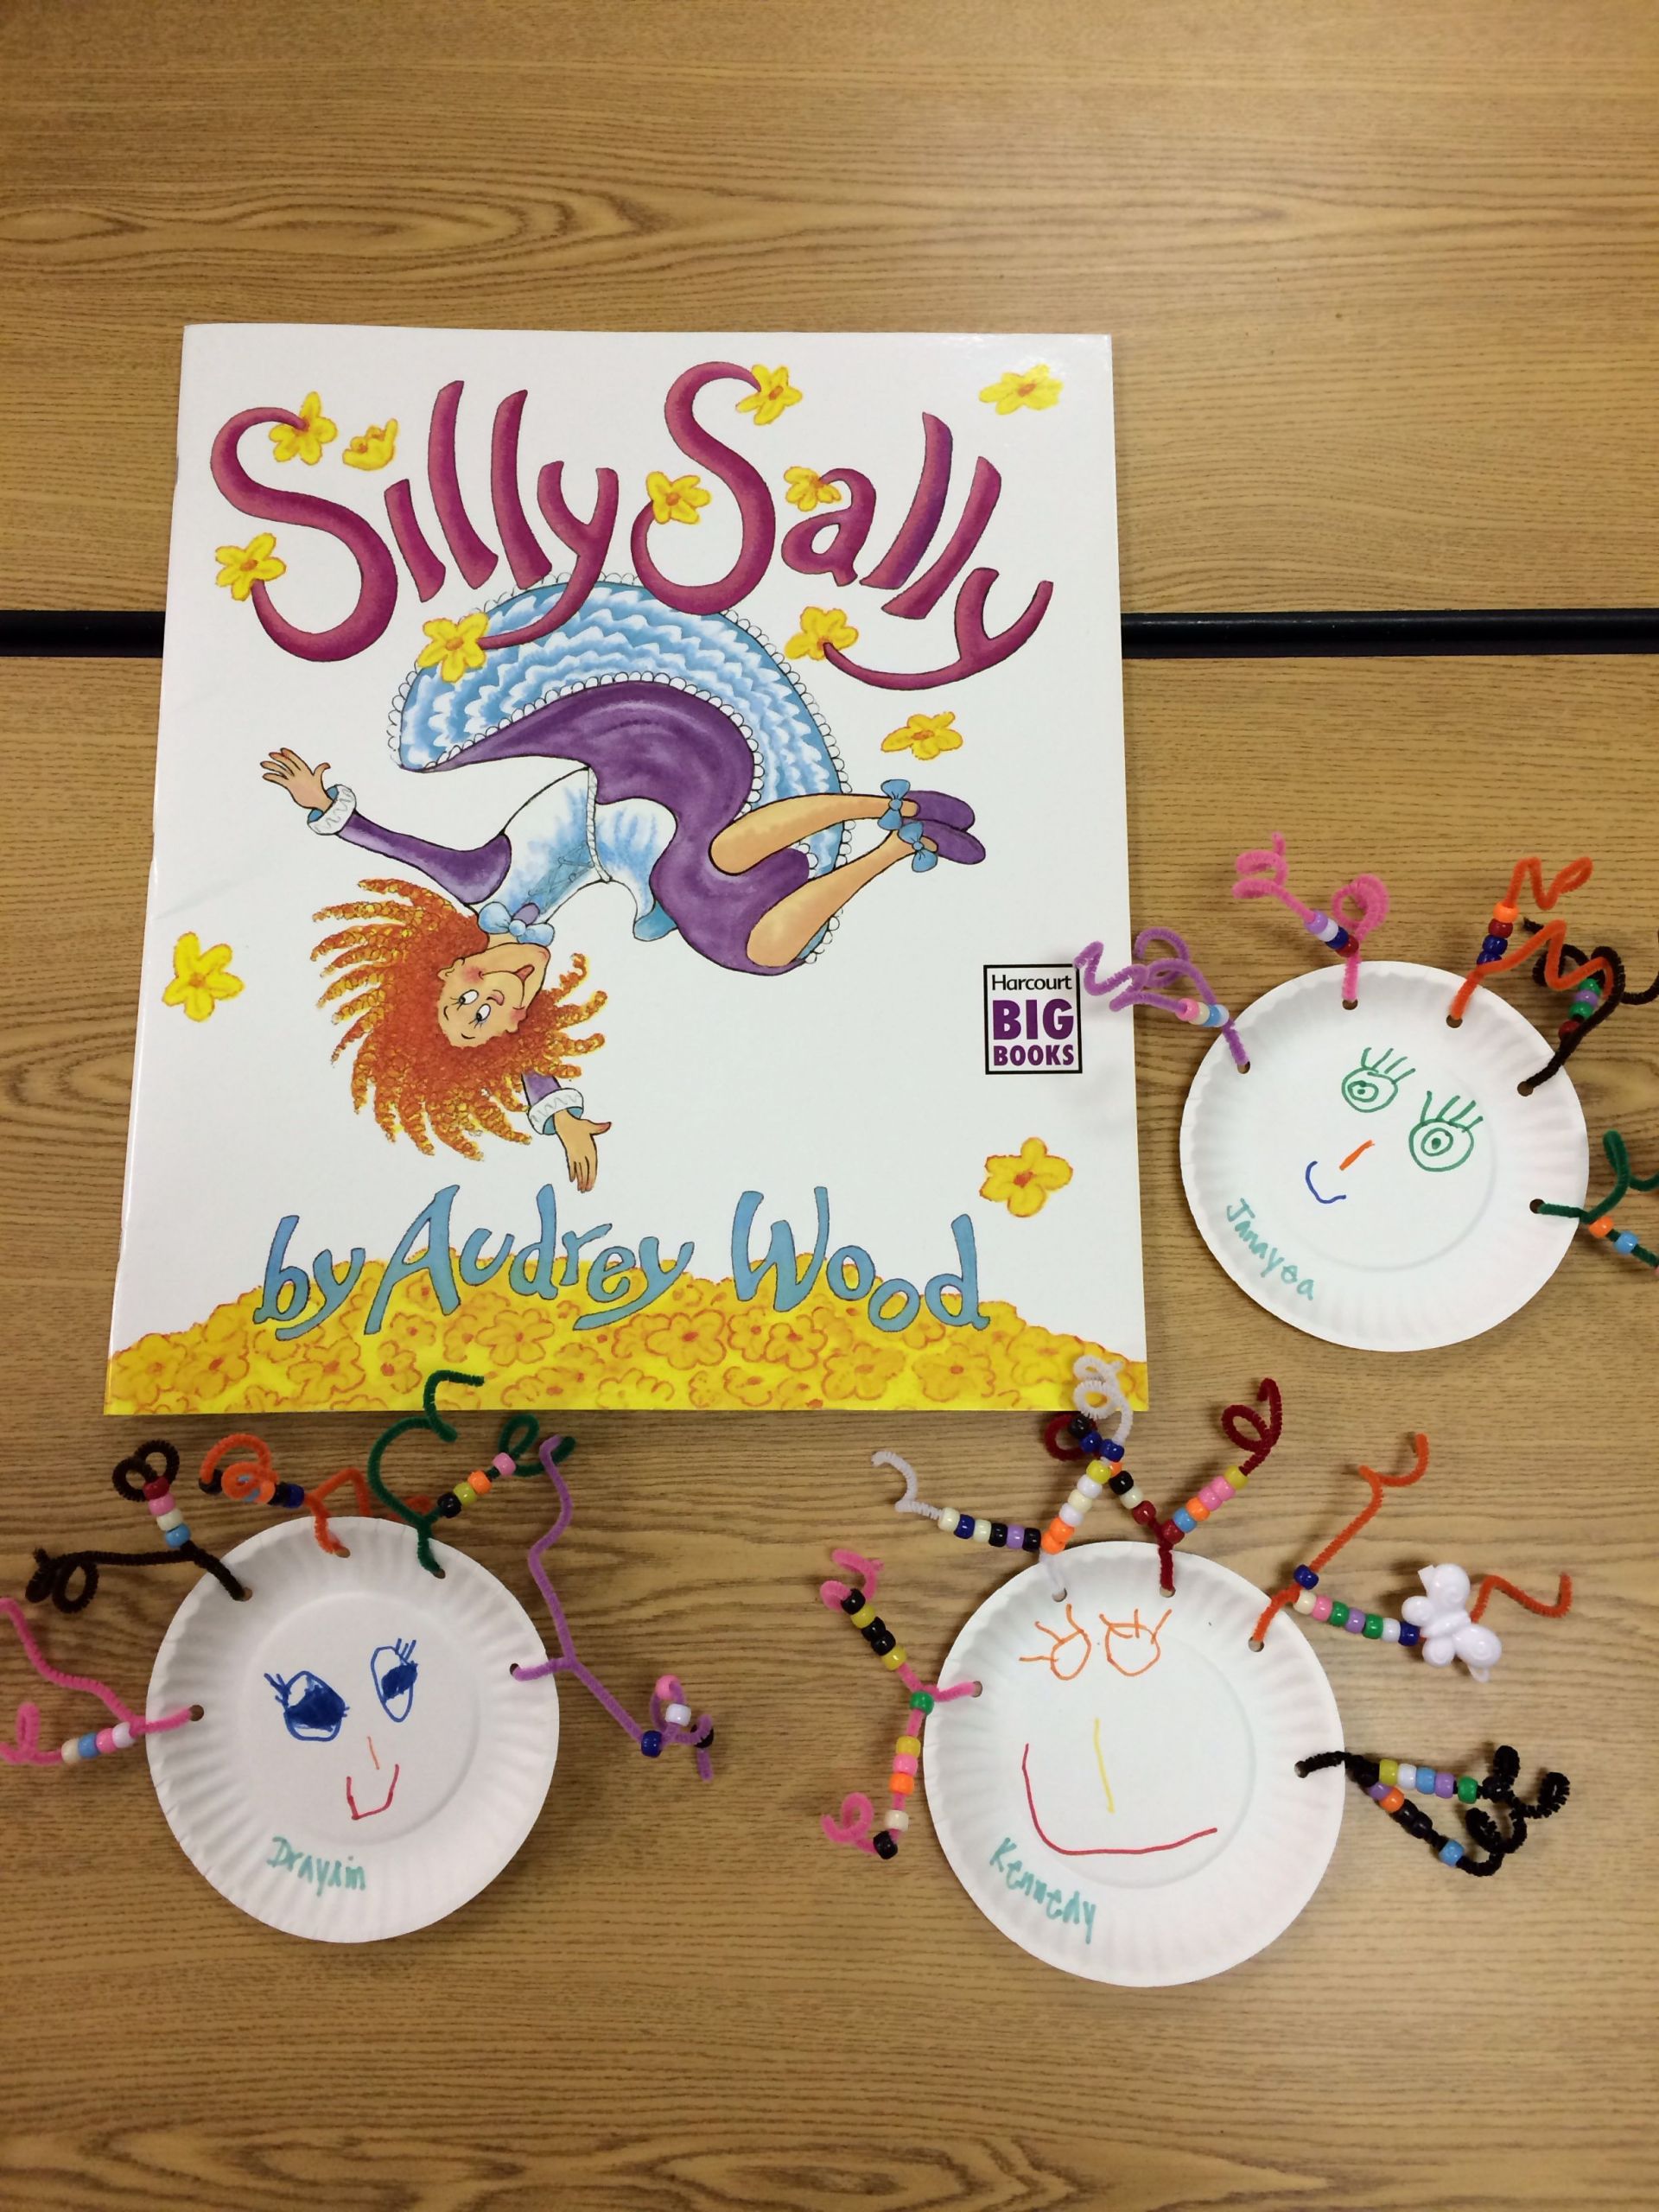 Art Project Ideas For Preschoolers
 Silly Sally preschool art project